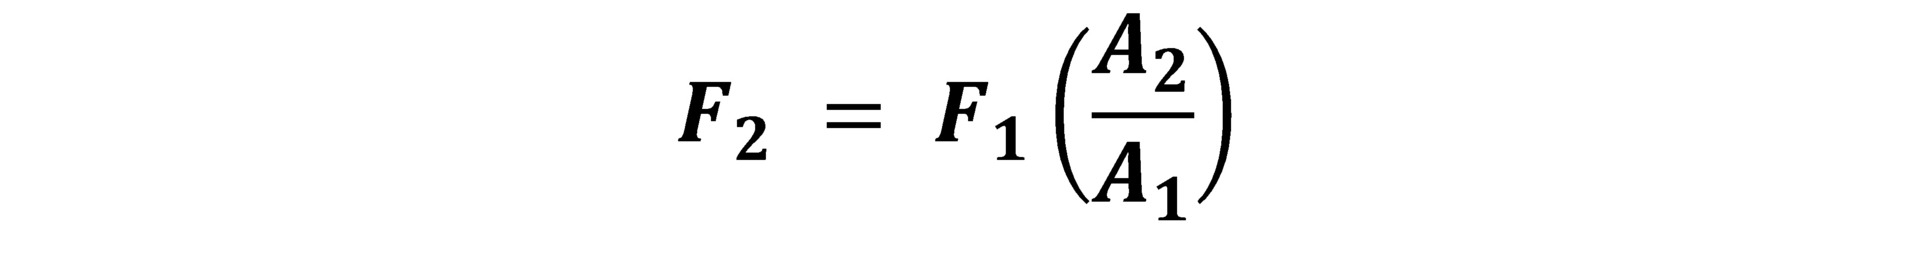 اصل پاسکال به صورت معادله بیان می شود.